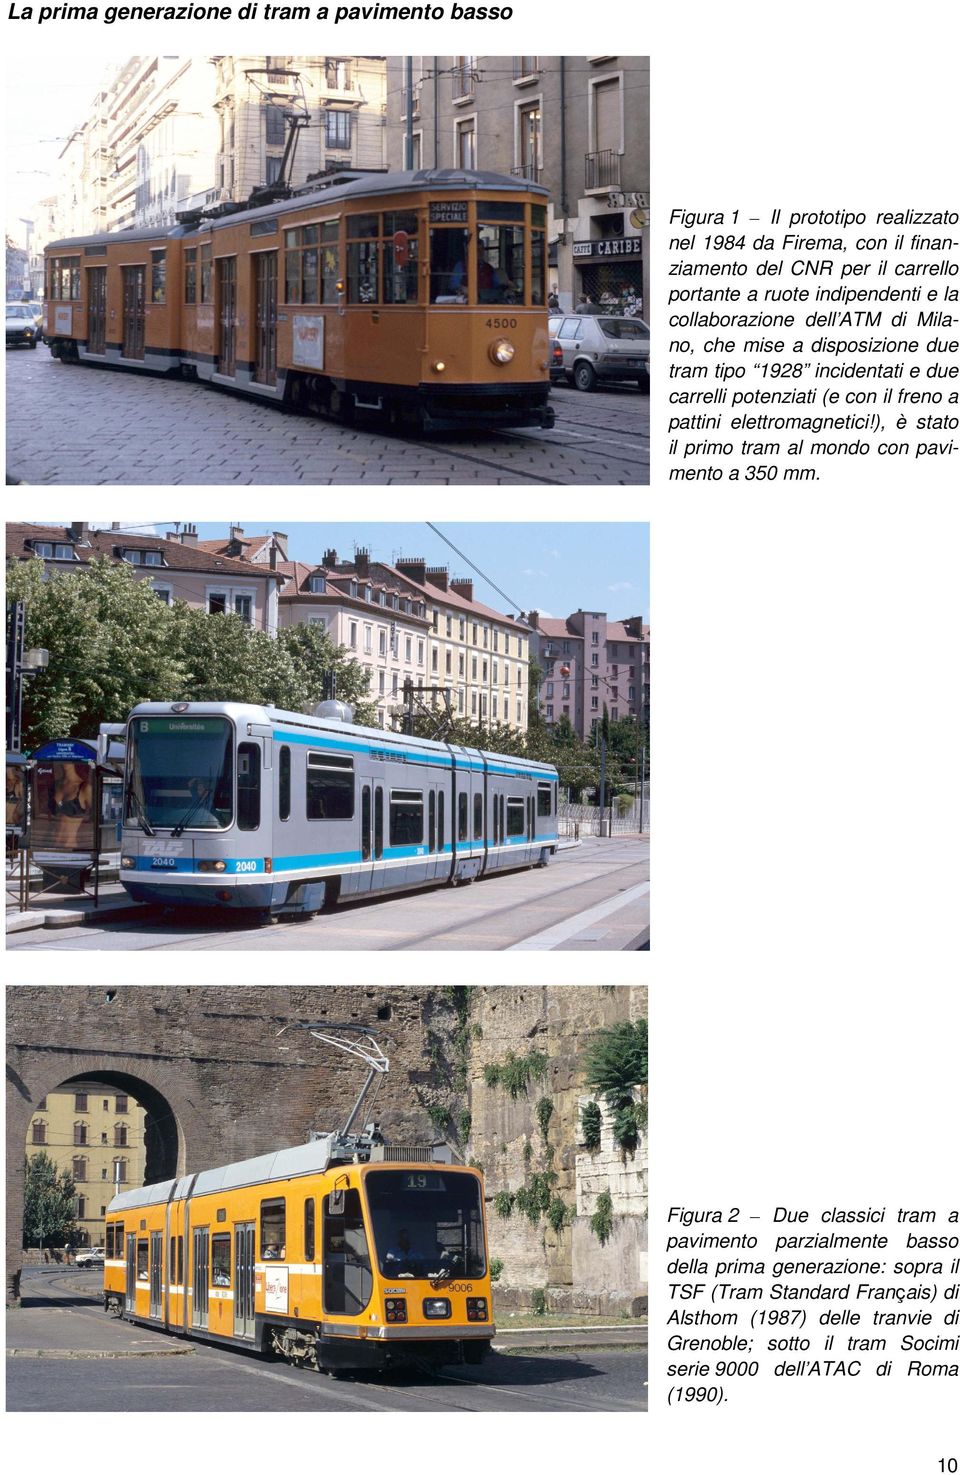 a pattini elettromagnetici!), è stato il primo tram al mondo con pavimento a 350 mm.